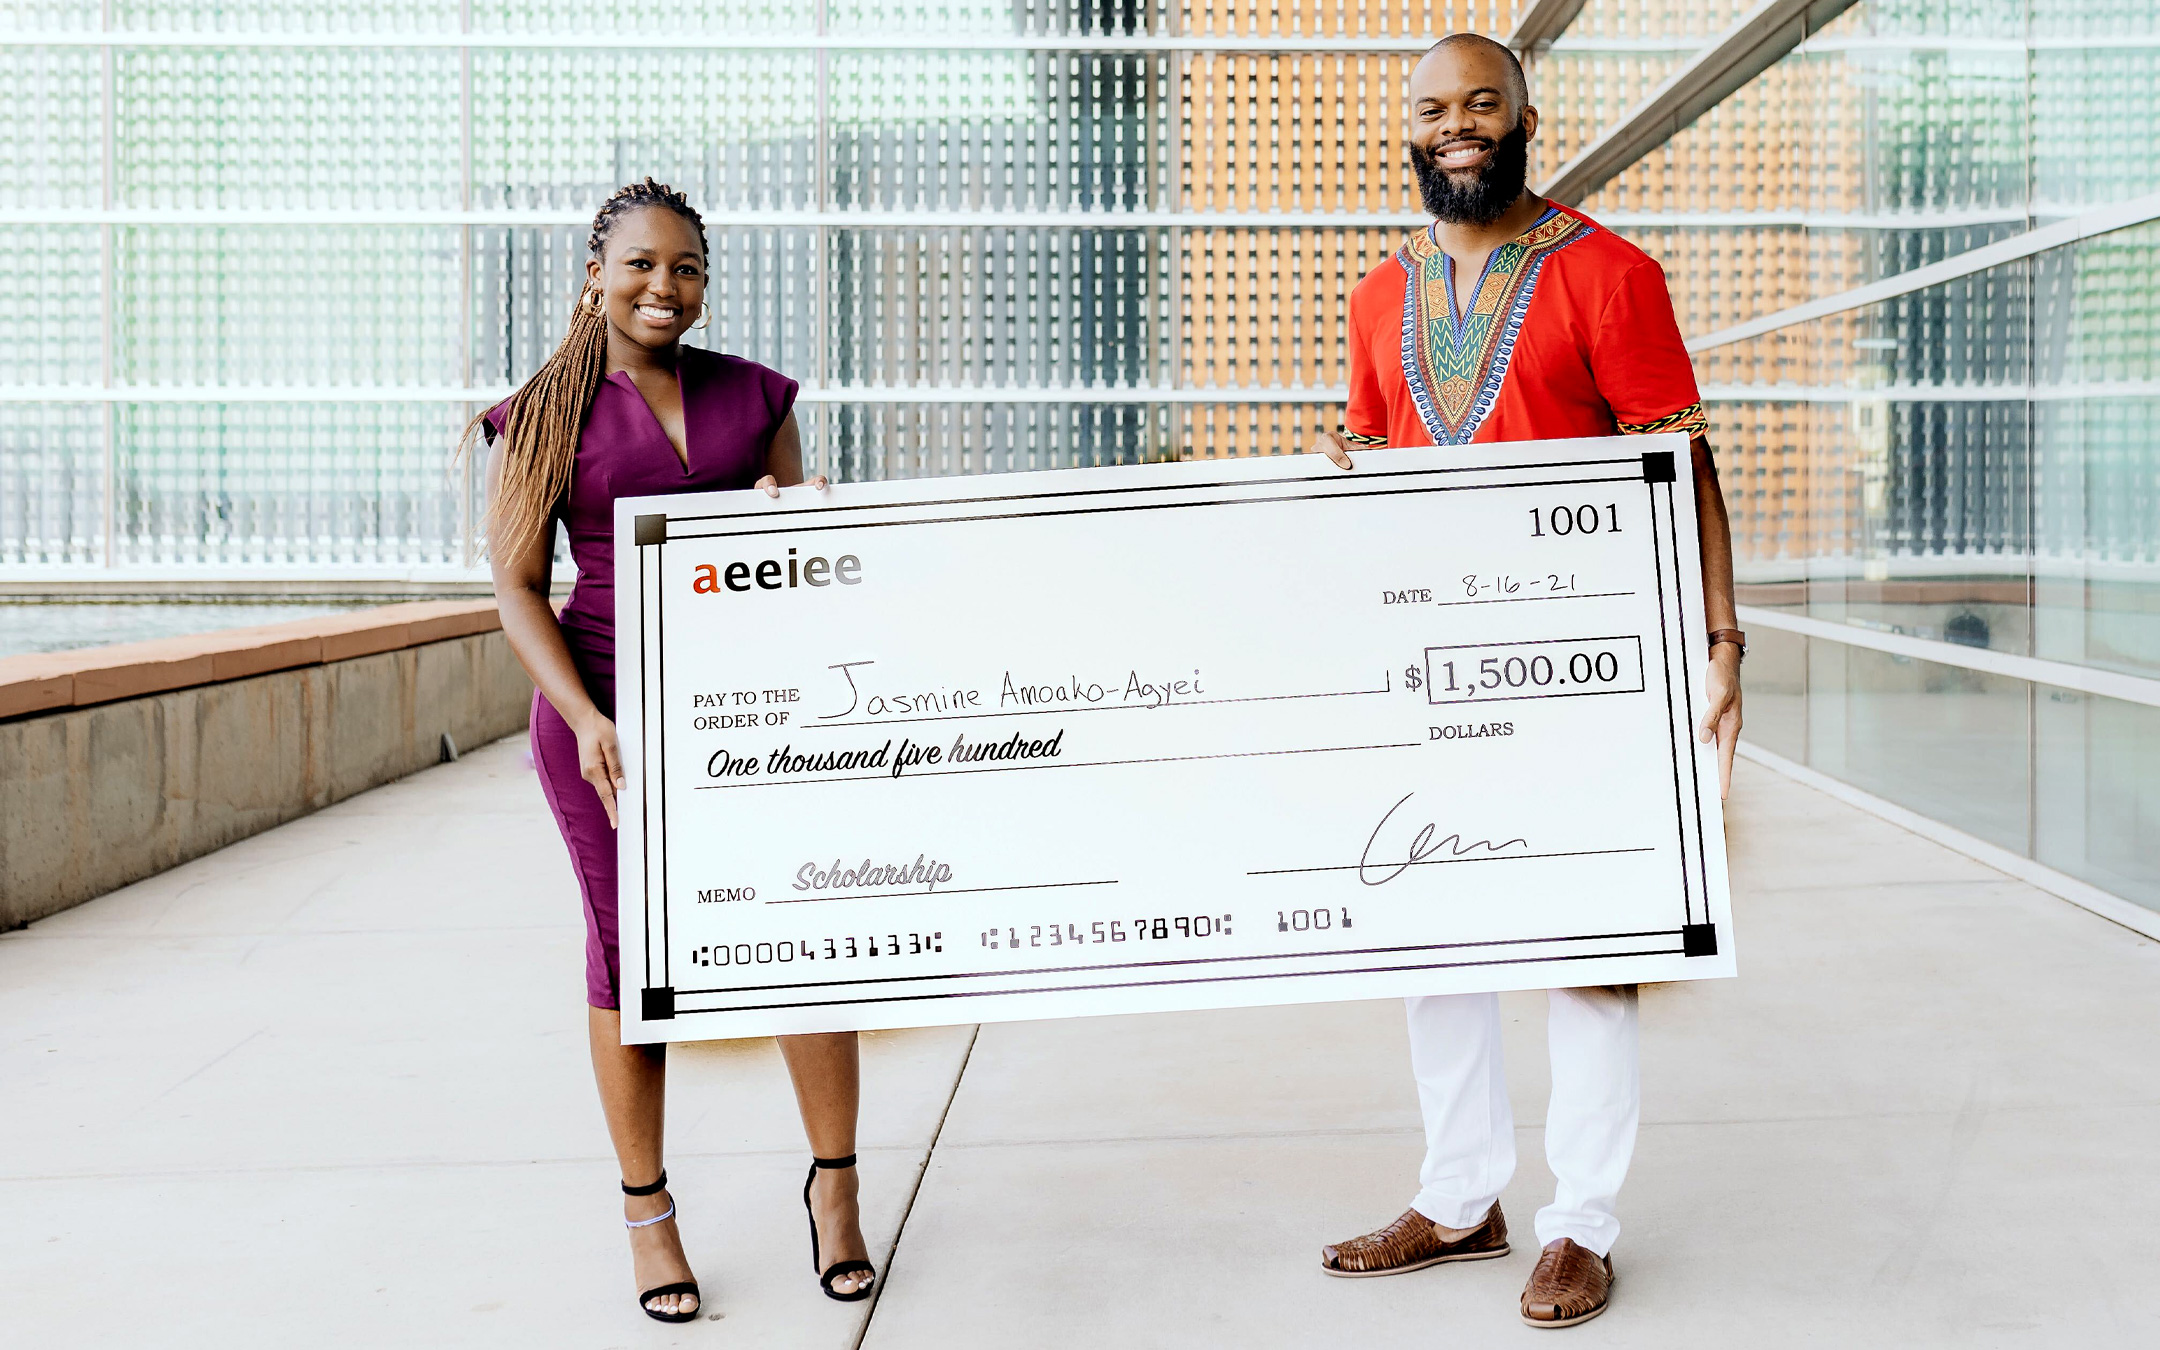 Aeeiee awards $1500 scholarship to intern, Jasmine Amoako-Agyei to launch new startup